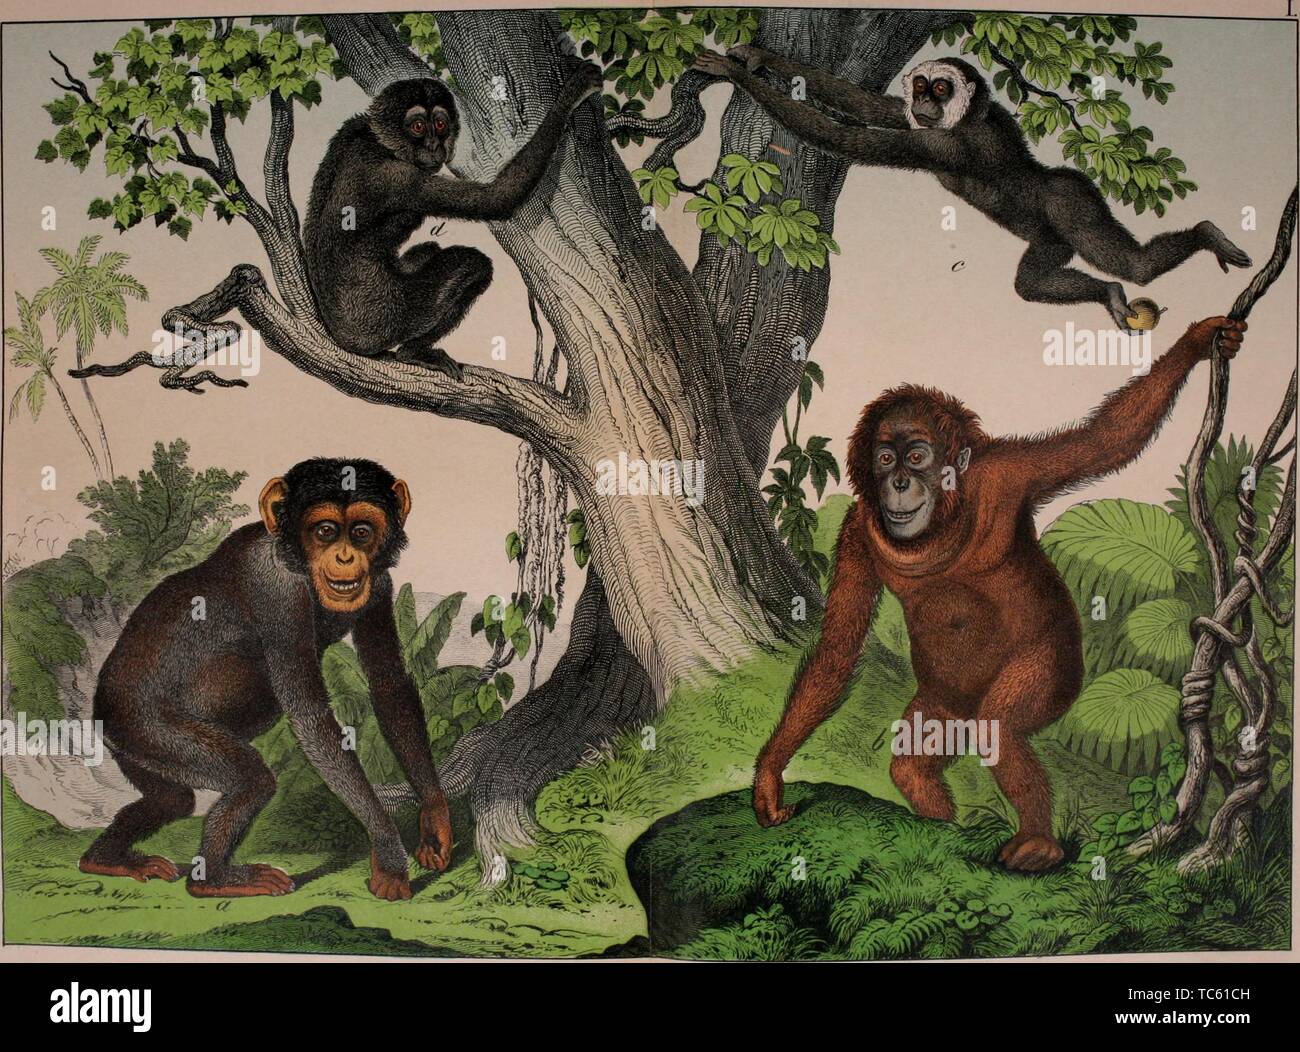 Incisione di le scimmie antropoide, scimpanzé, Orangutan, bianco-consegnato gibbone e Siamang, dal libro "Storia Naturale del regno animale per l'impiego dei giovani" da William Forsell Kirby, 1889. La cortesia Internet Archive. () Foto Stock